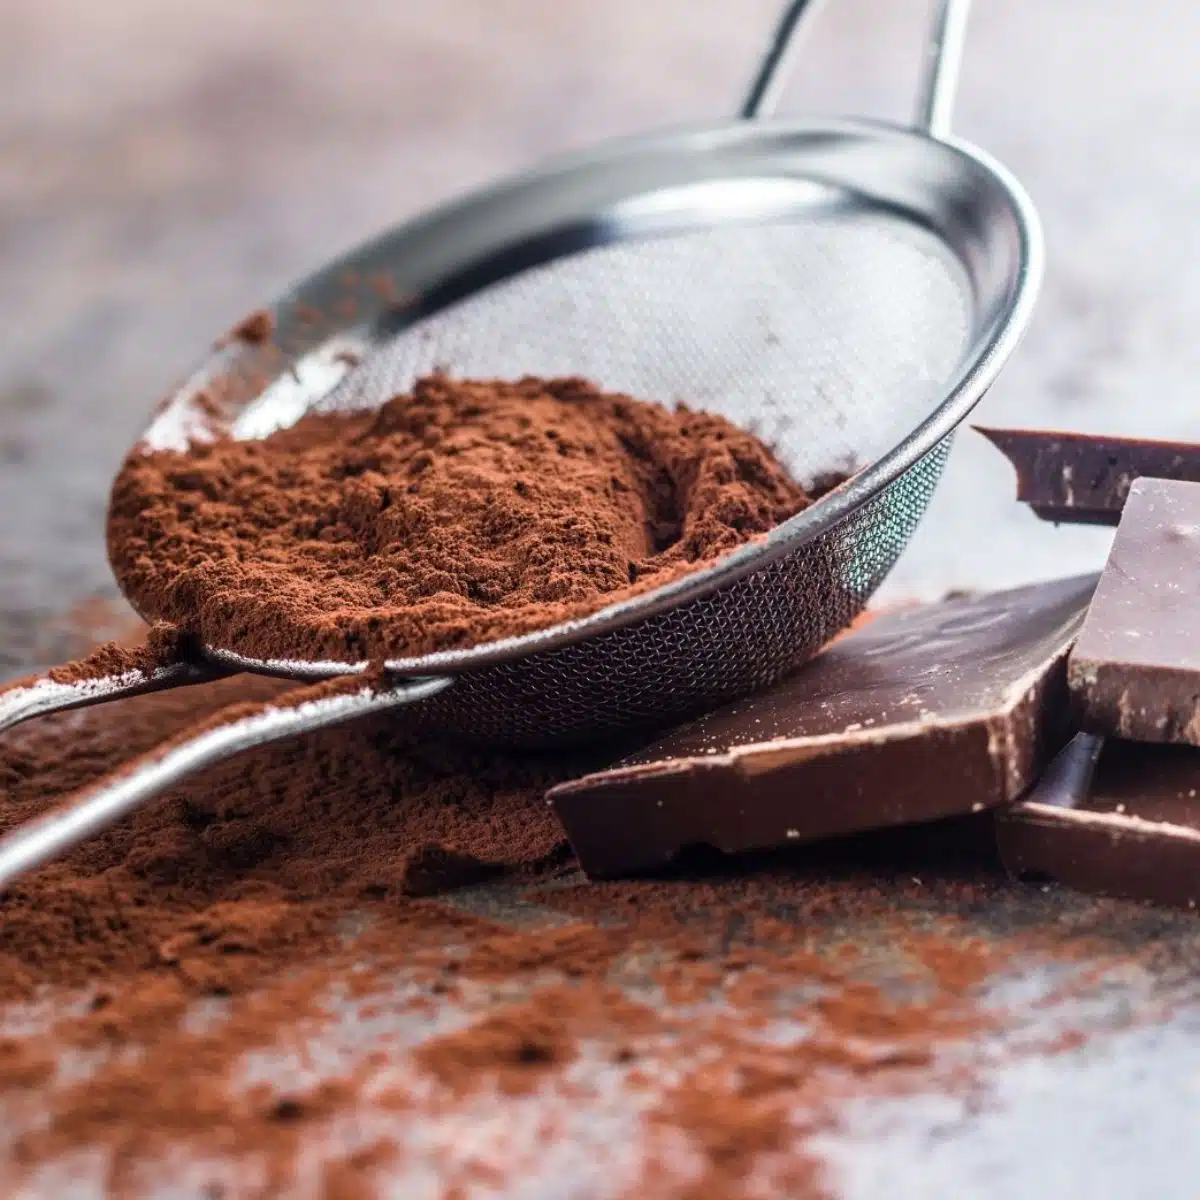 Sostituto del cacao in polvere con l'immagine del cacao sfuso in un colino a maglia fine.